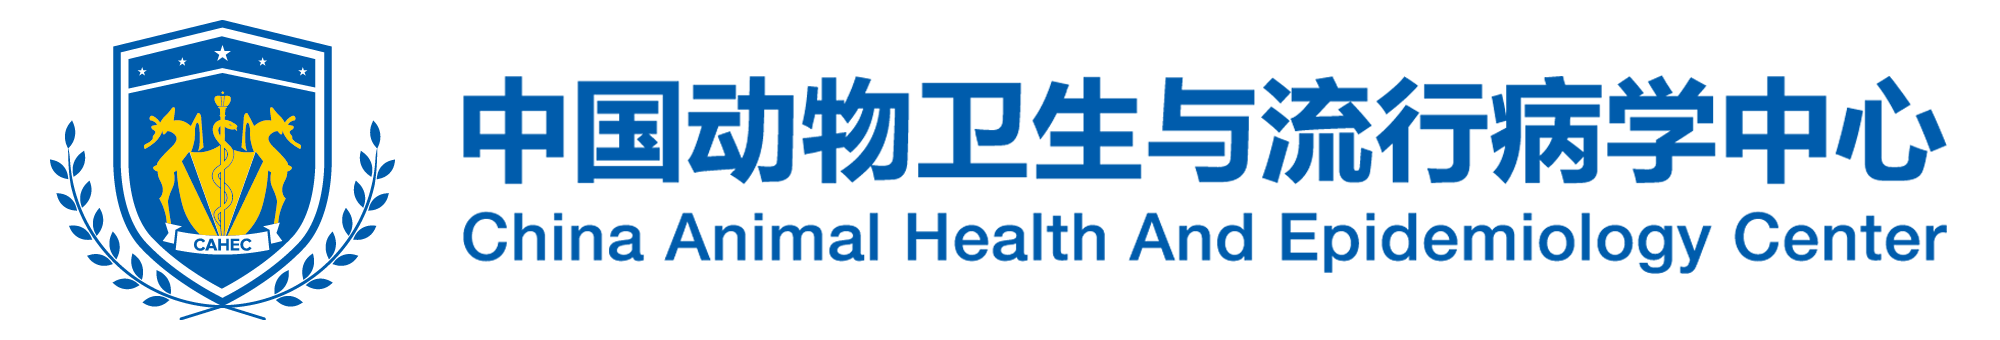 中国动物卫生与流行病学中心